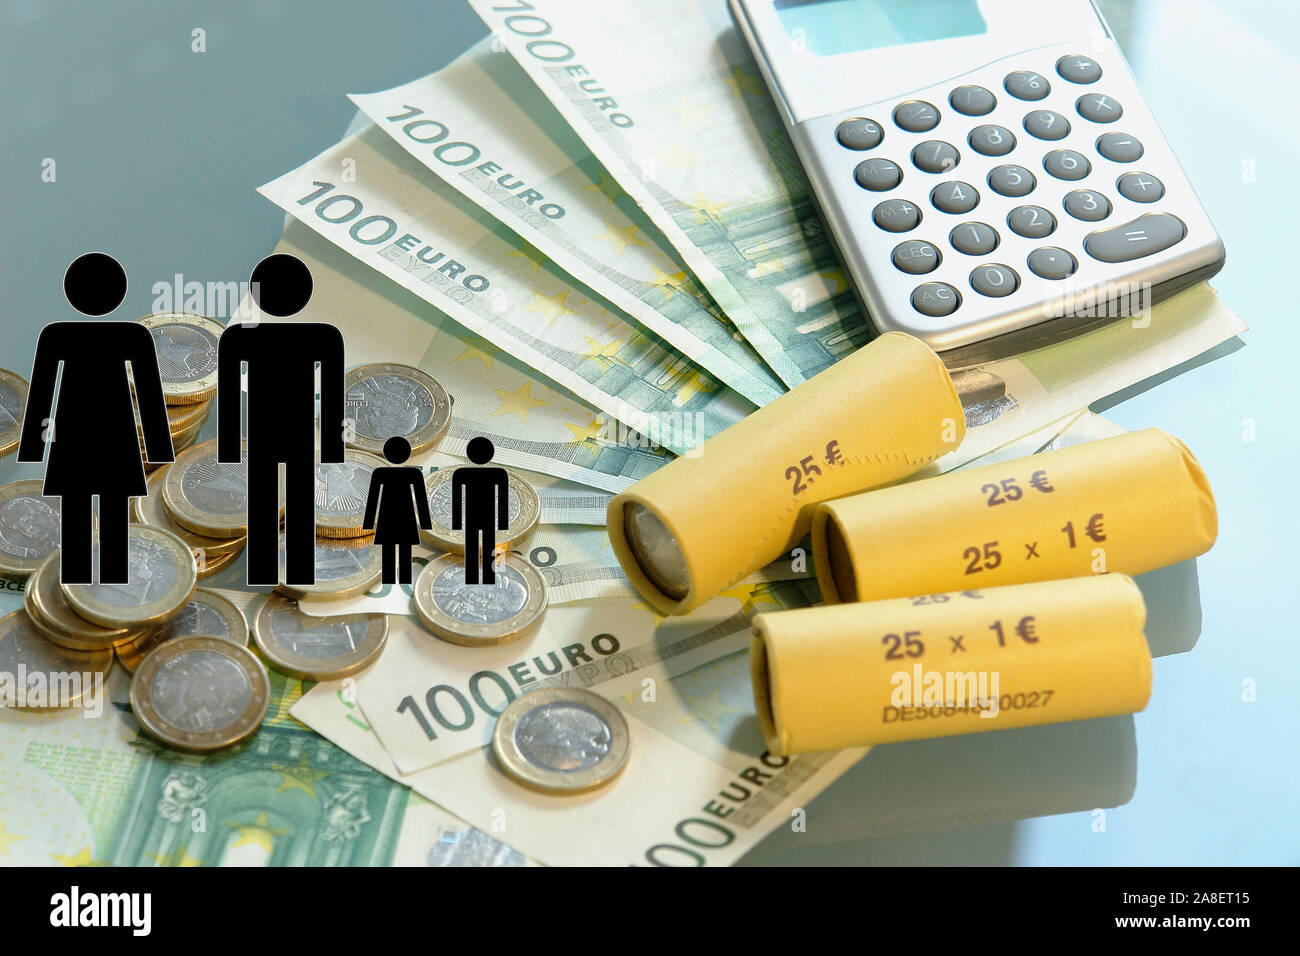 Familiengeld, Unterstützung der Familie, Taschenrechner und Euro, Stock Photo